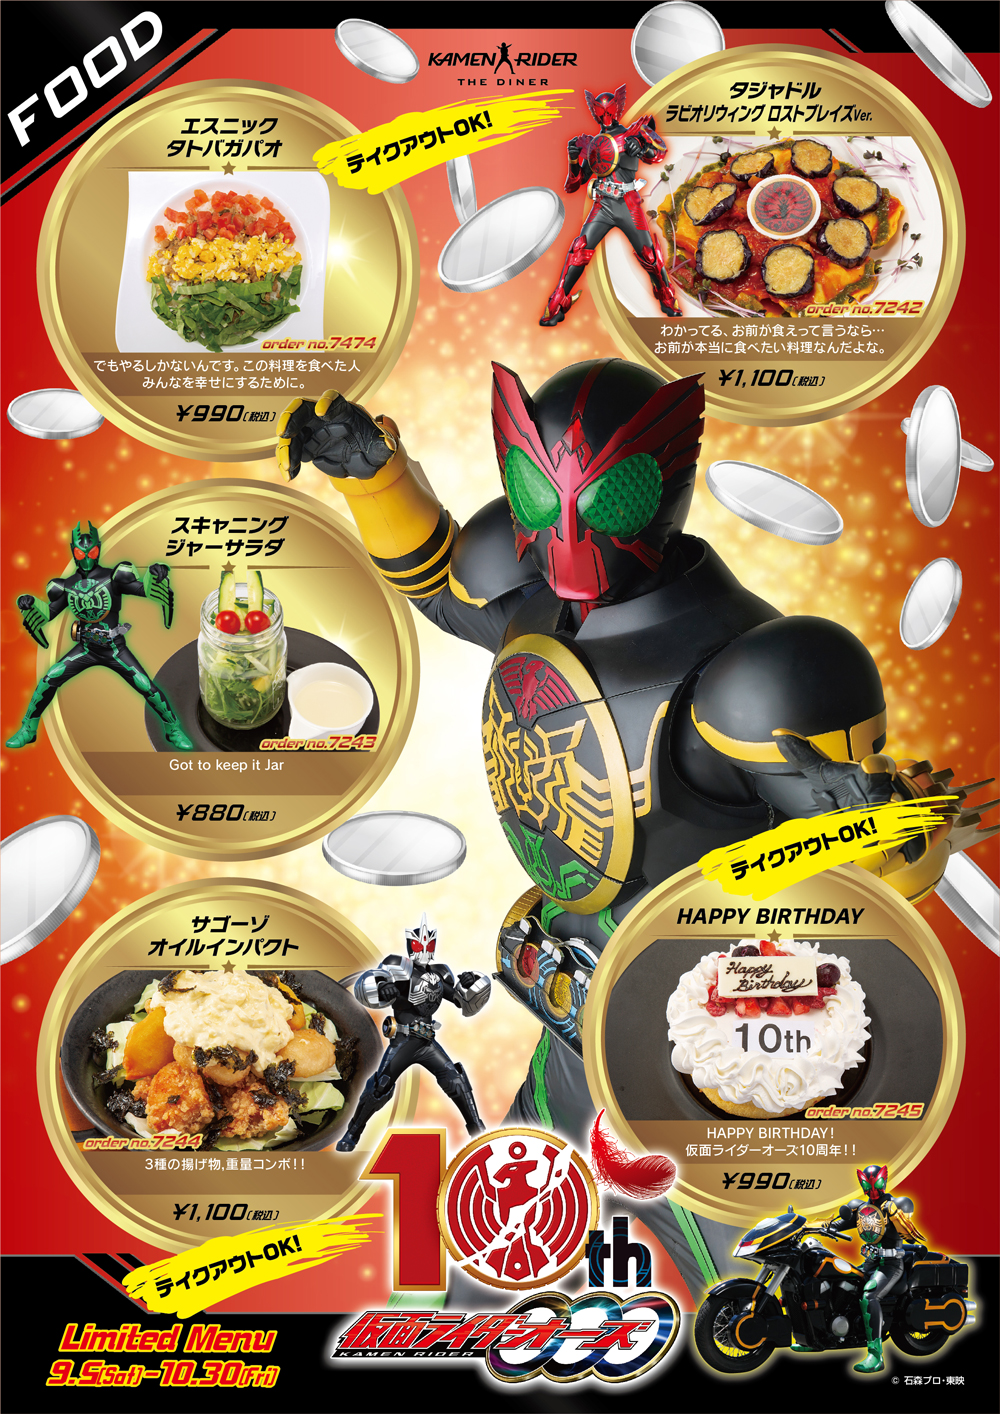 イベント Kamen Rider The Diner 仮面ライダーザダイナー パセラボtv 仮面ライダー パセラ コラボレストラン オーズ Ooo 10周年フェア開催